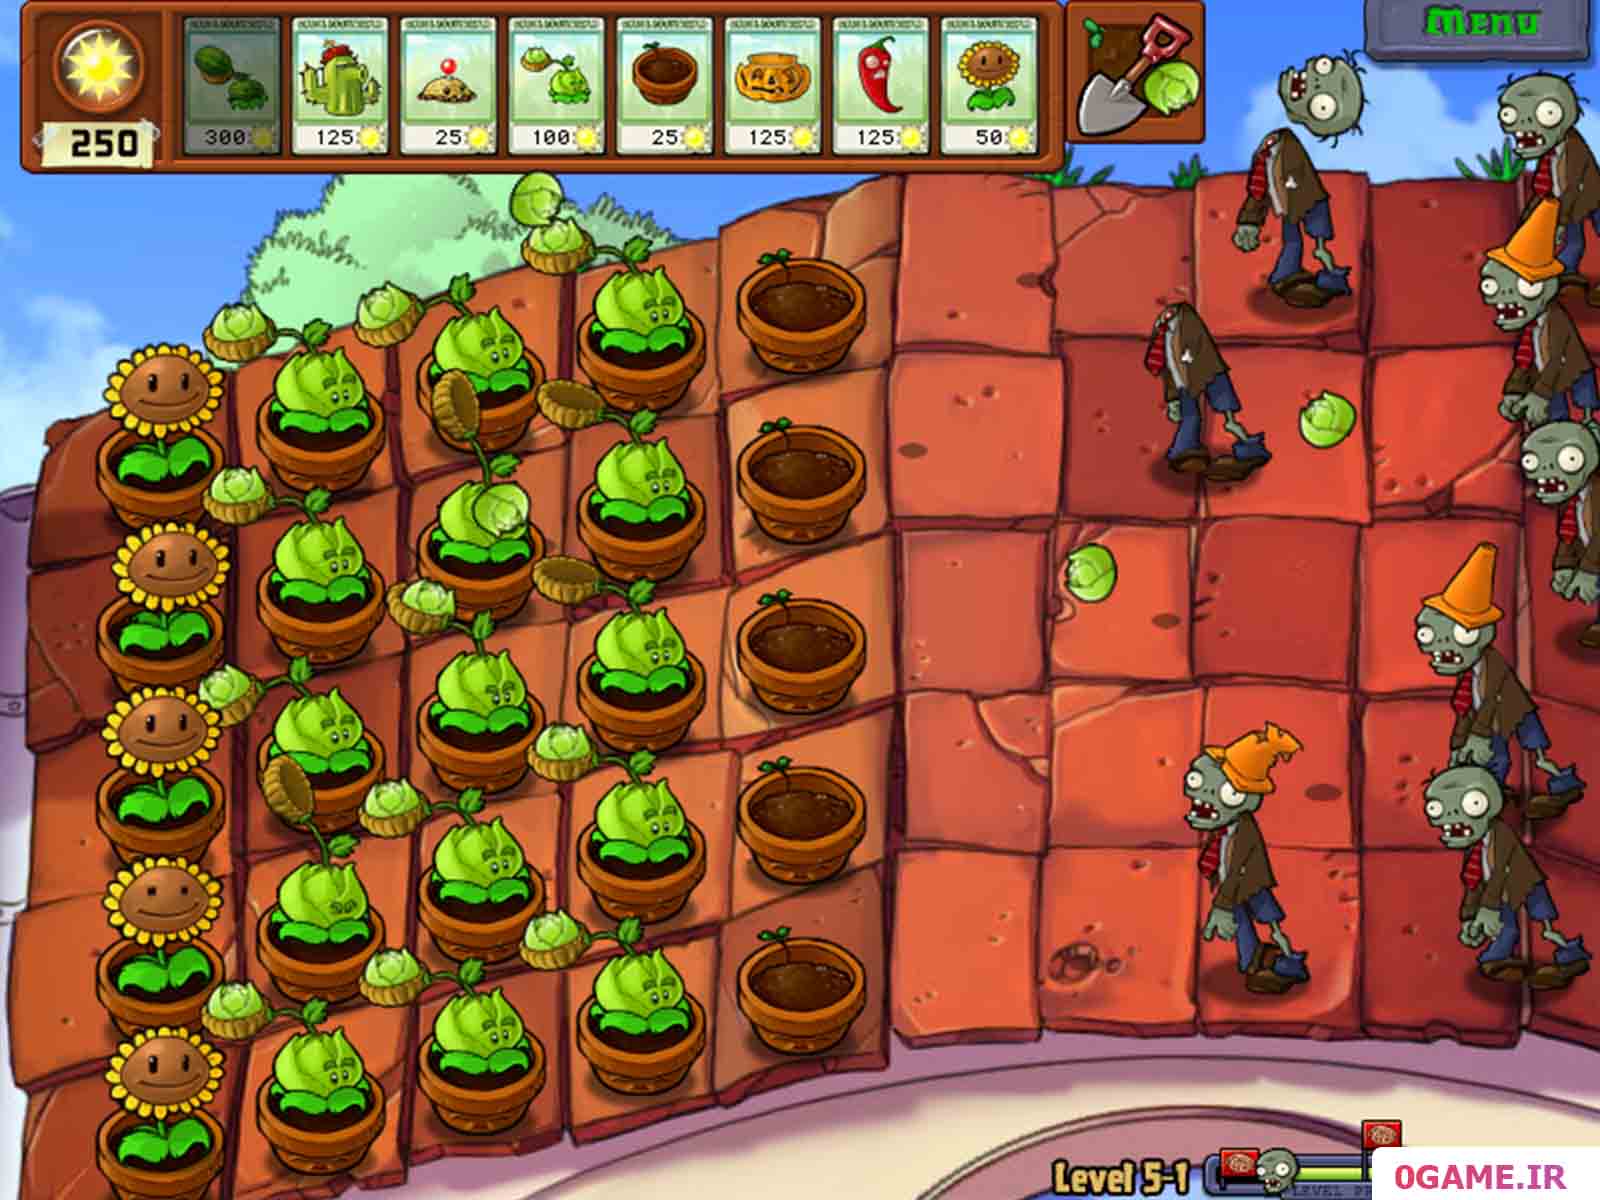 دانلود بازی گیاهان در مقابل زامبی (Plants vs. Zombies) نسخه کامل برای کامپیوتر